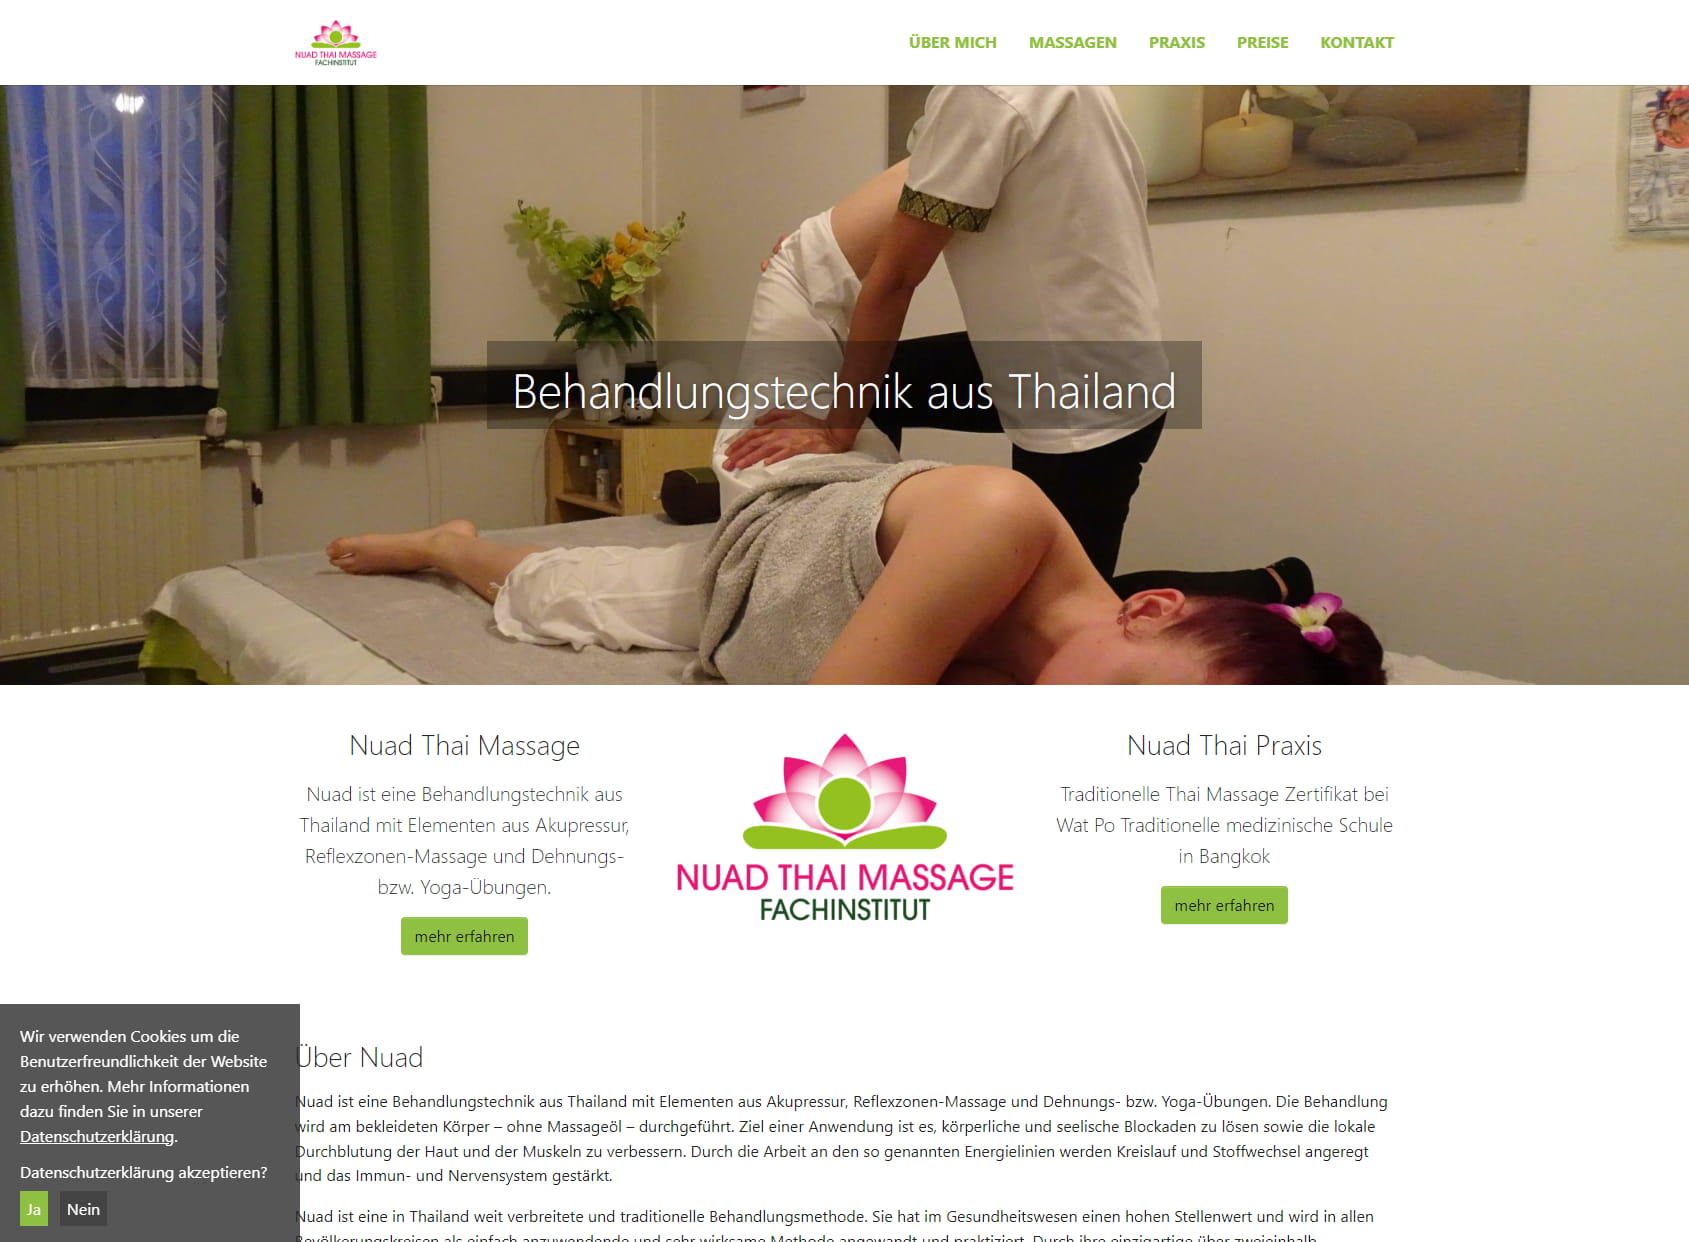 Nuad Thai Massage Fachinstitut